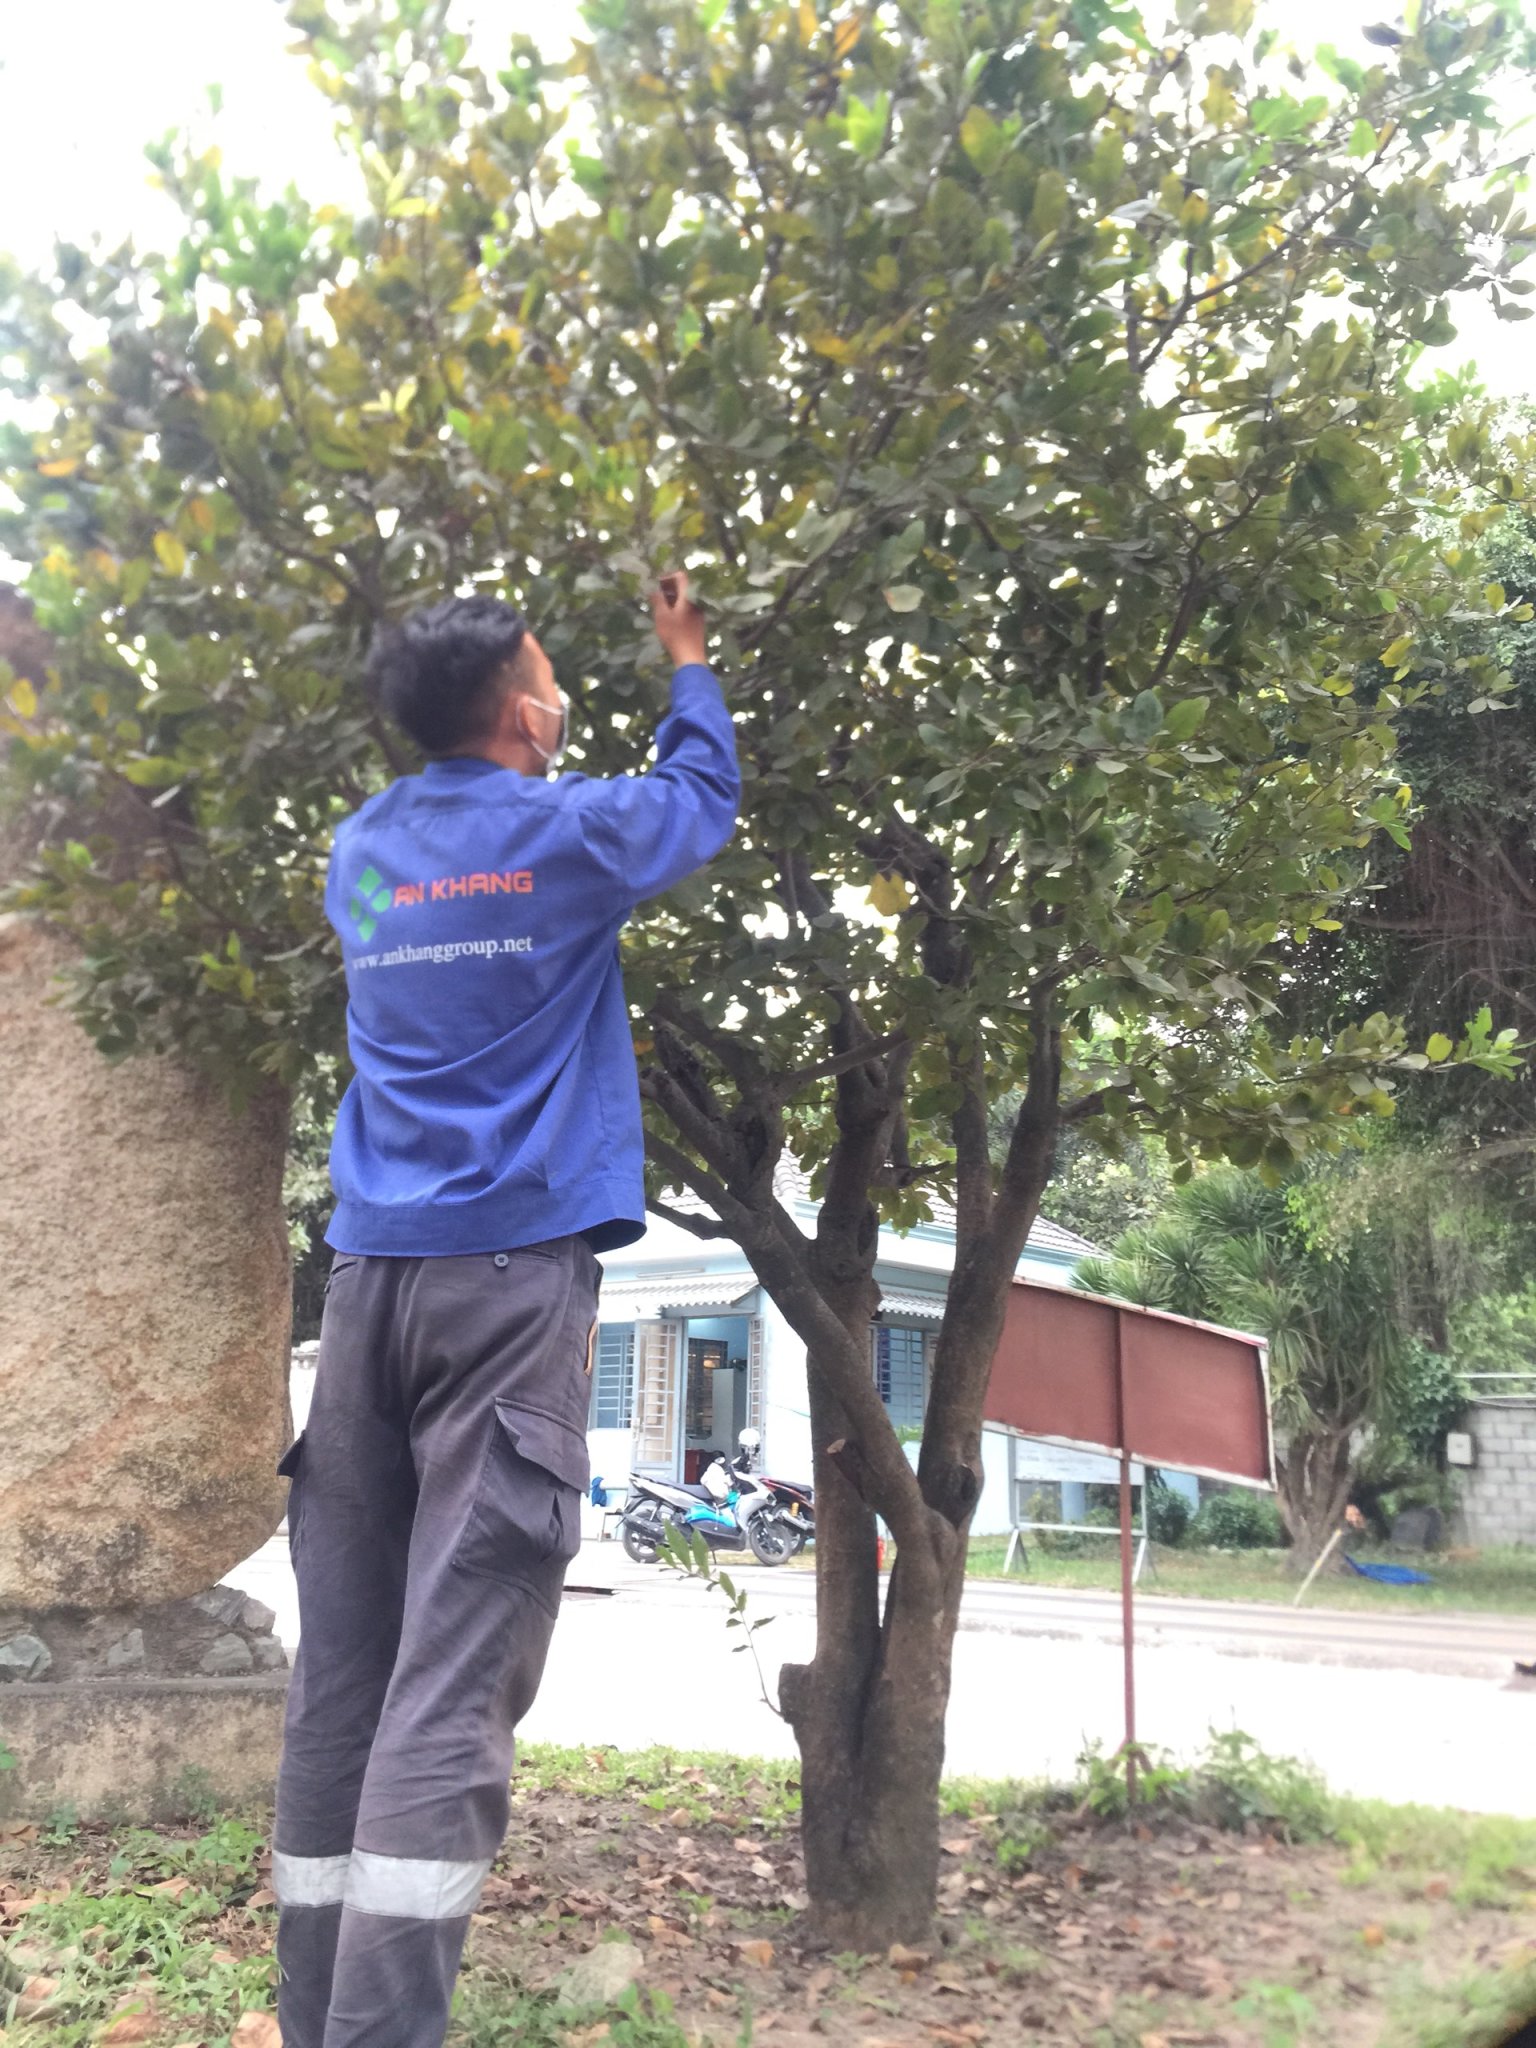 Dịch vụ cắt tỉa cây xanh Bình Dương của An Khang nhanh chóng, linh hoạt